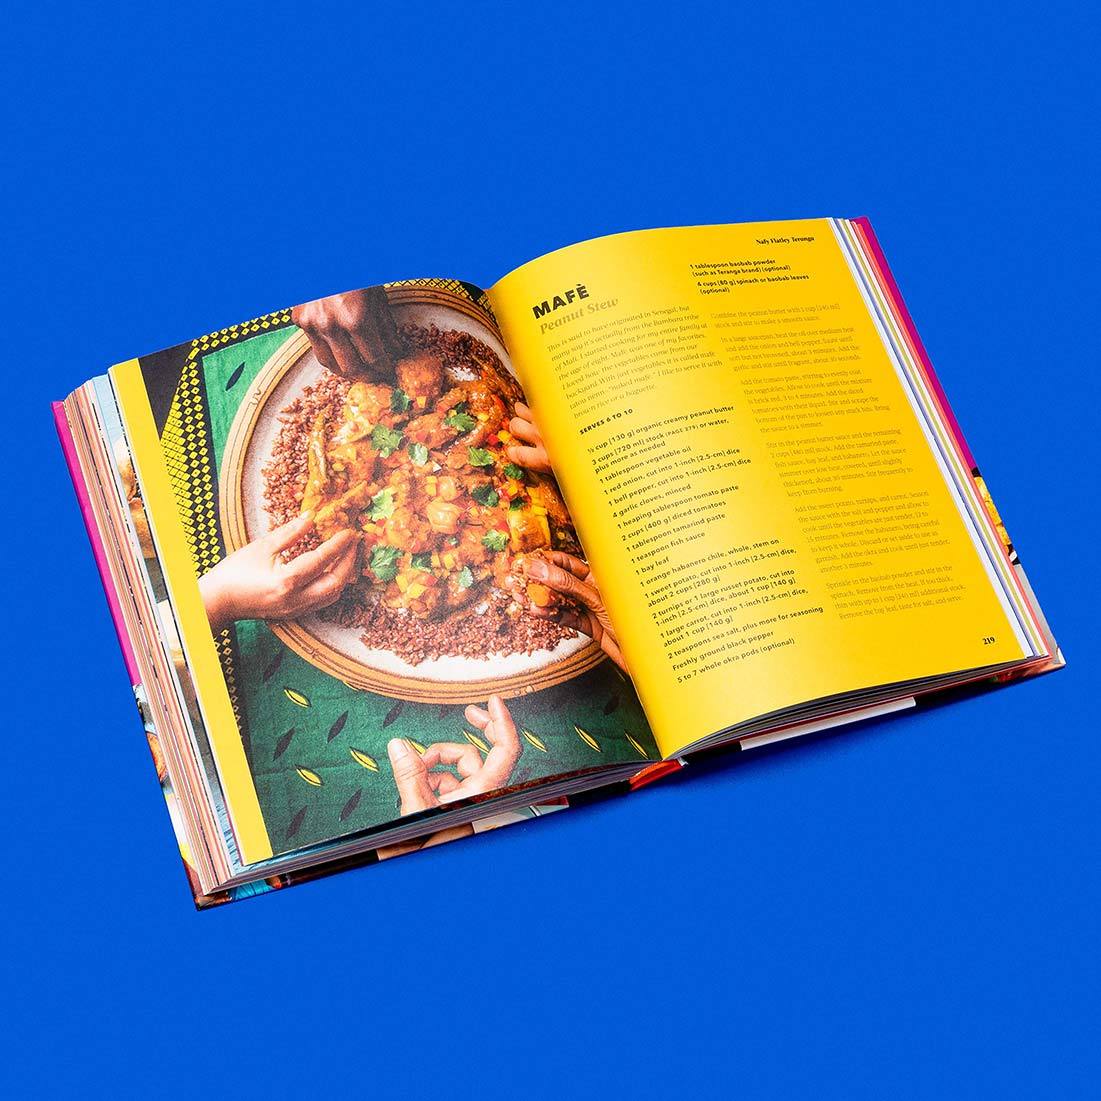 We Are La Cocina: Recipes in Pursuit of the American Dream